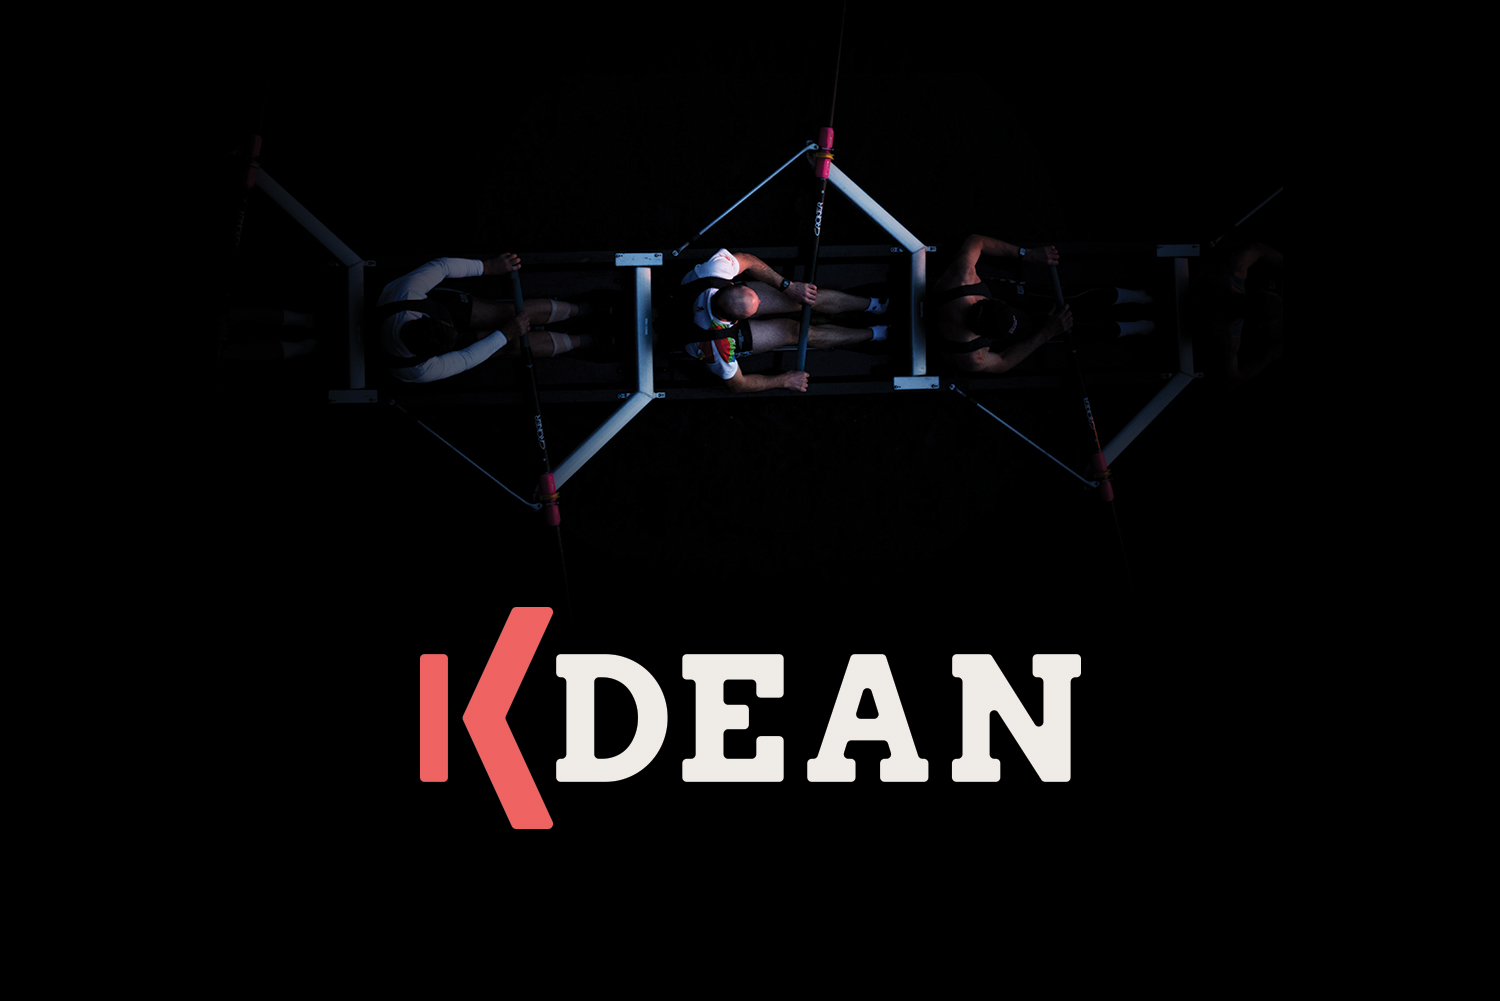 K-Dean & Associates